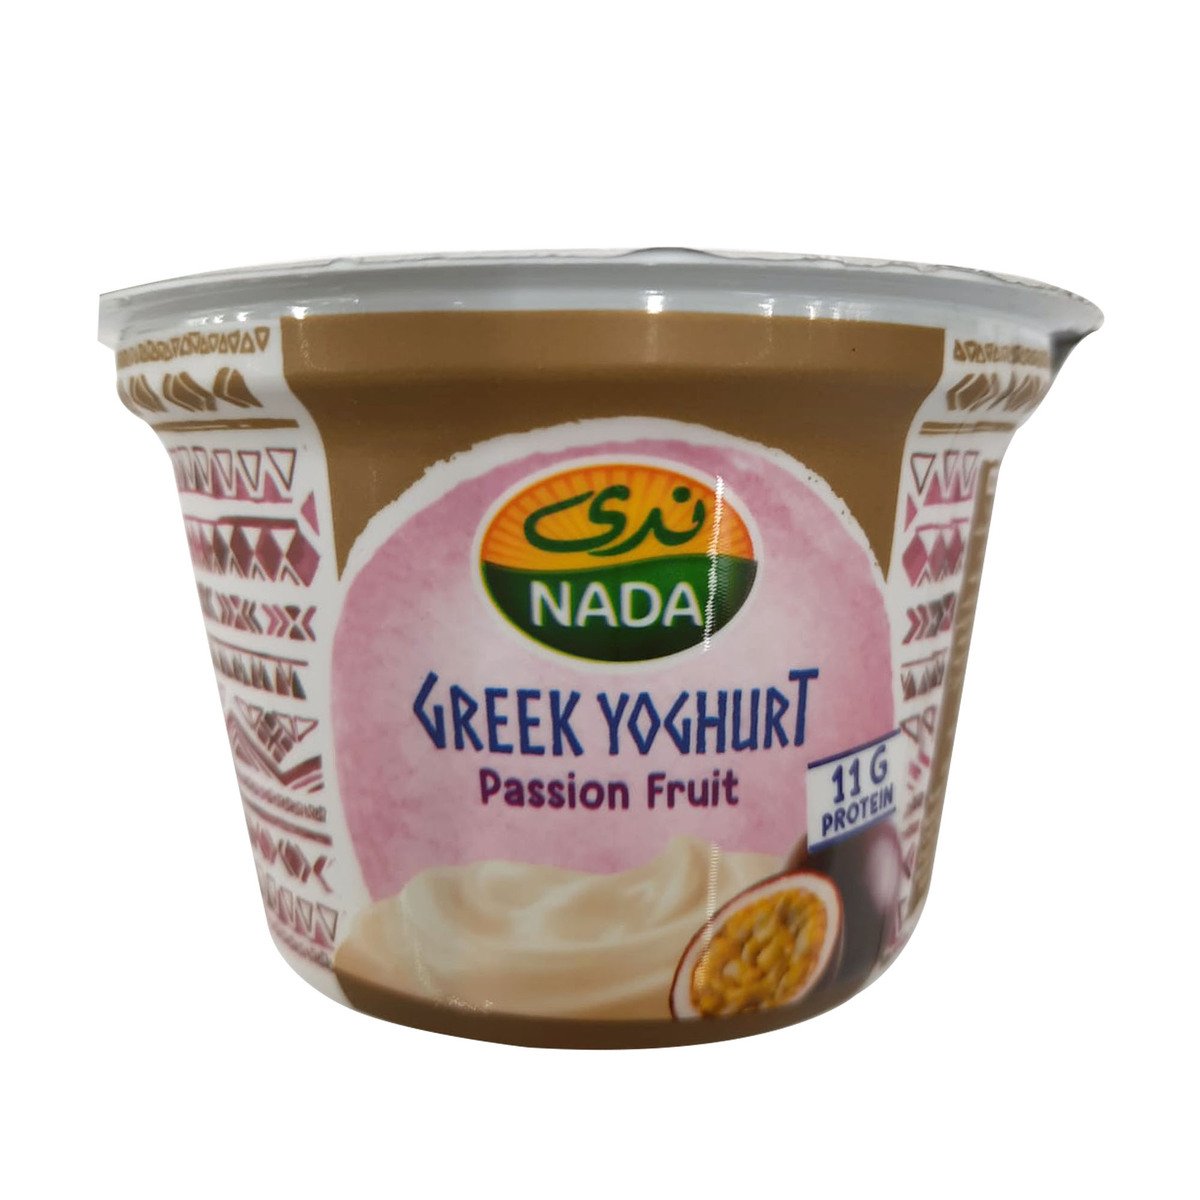 اشتري قم بشراء ندى زبادي يوناني بنكهة الباشن فروت 0% دهون 160 جم Online at Best Price من الموقع - من لولو هايبر ماركت Flavoured Yoghurt في السعودية